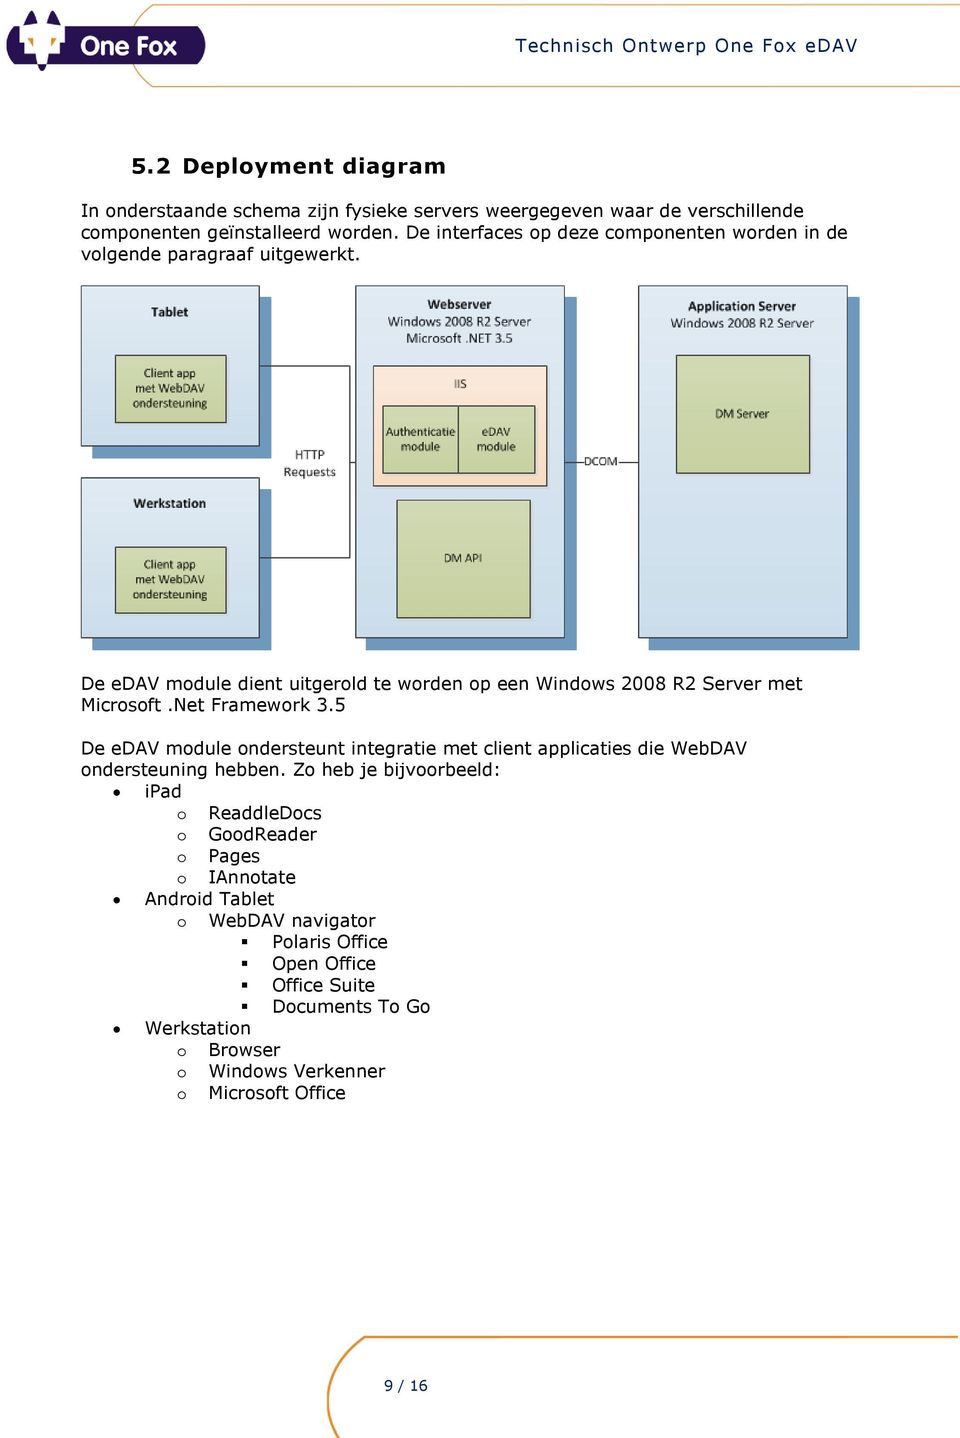 De edav module dient uitgerold te worden op een Windows 2008 R2 Server met Microsoft.Net Framework 3.